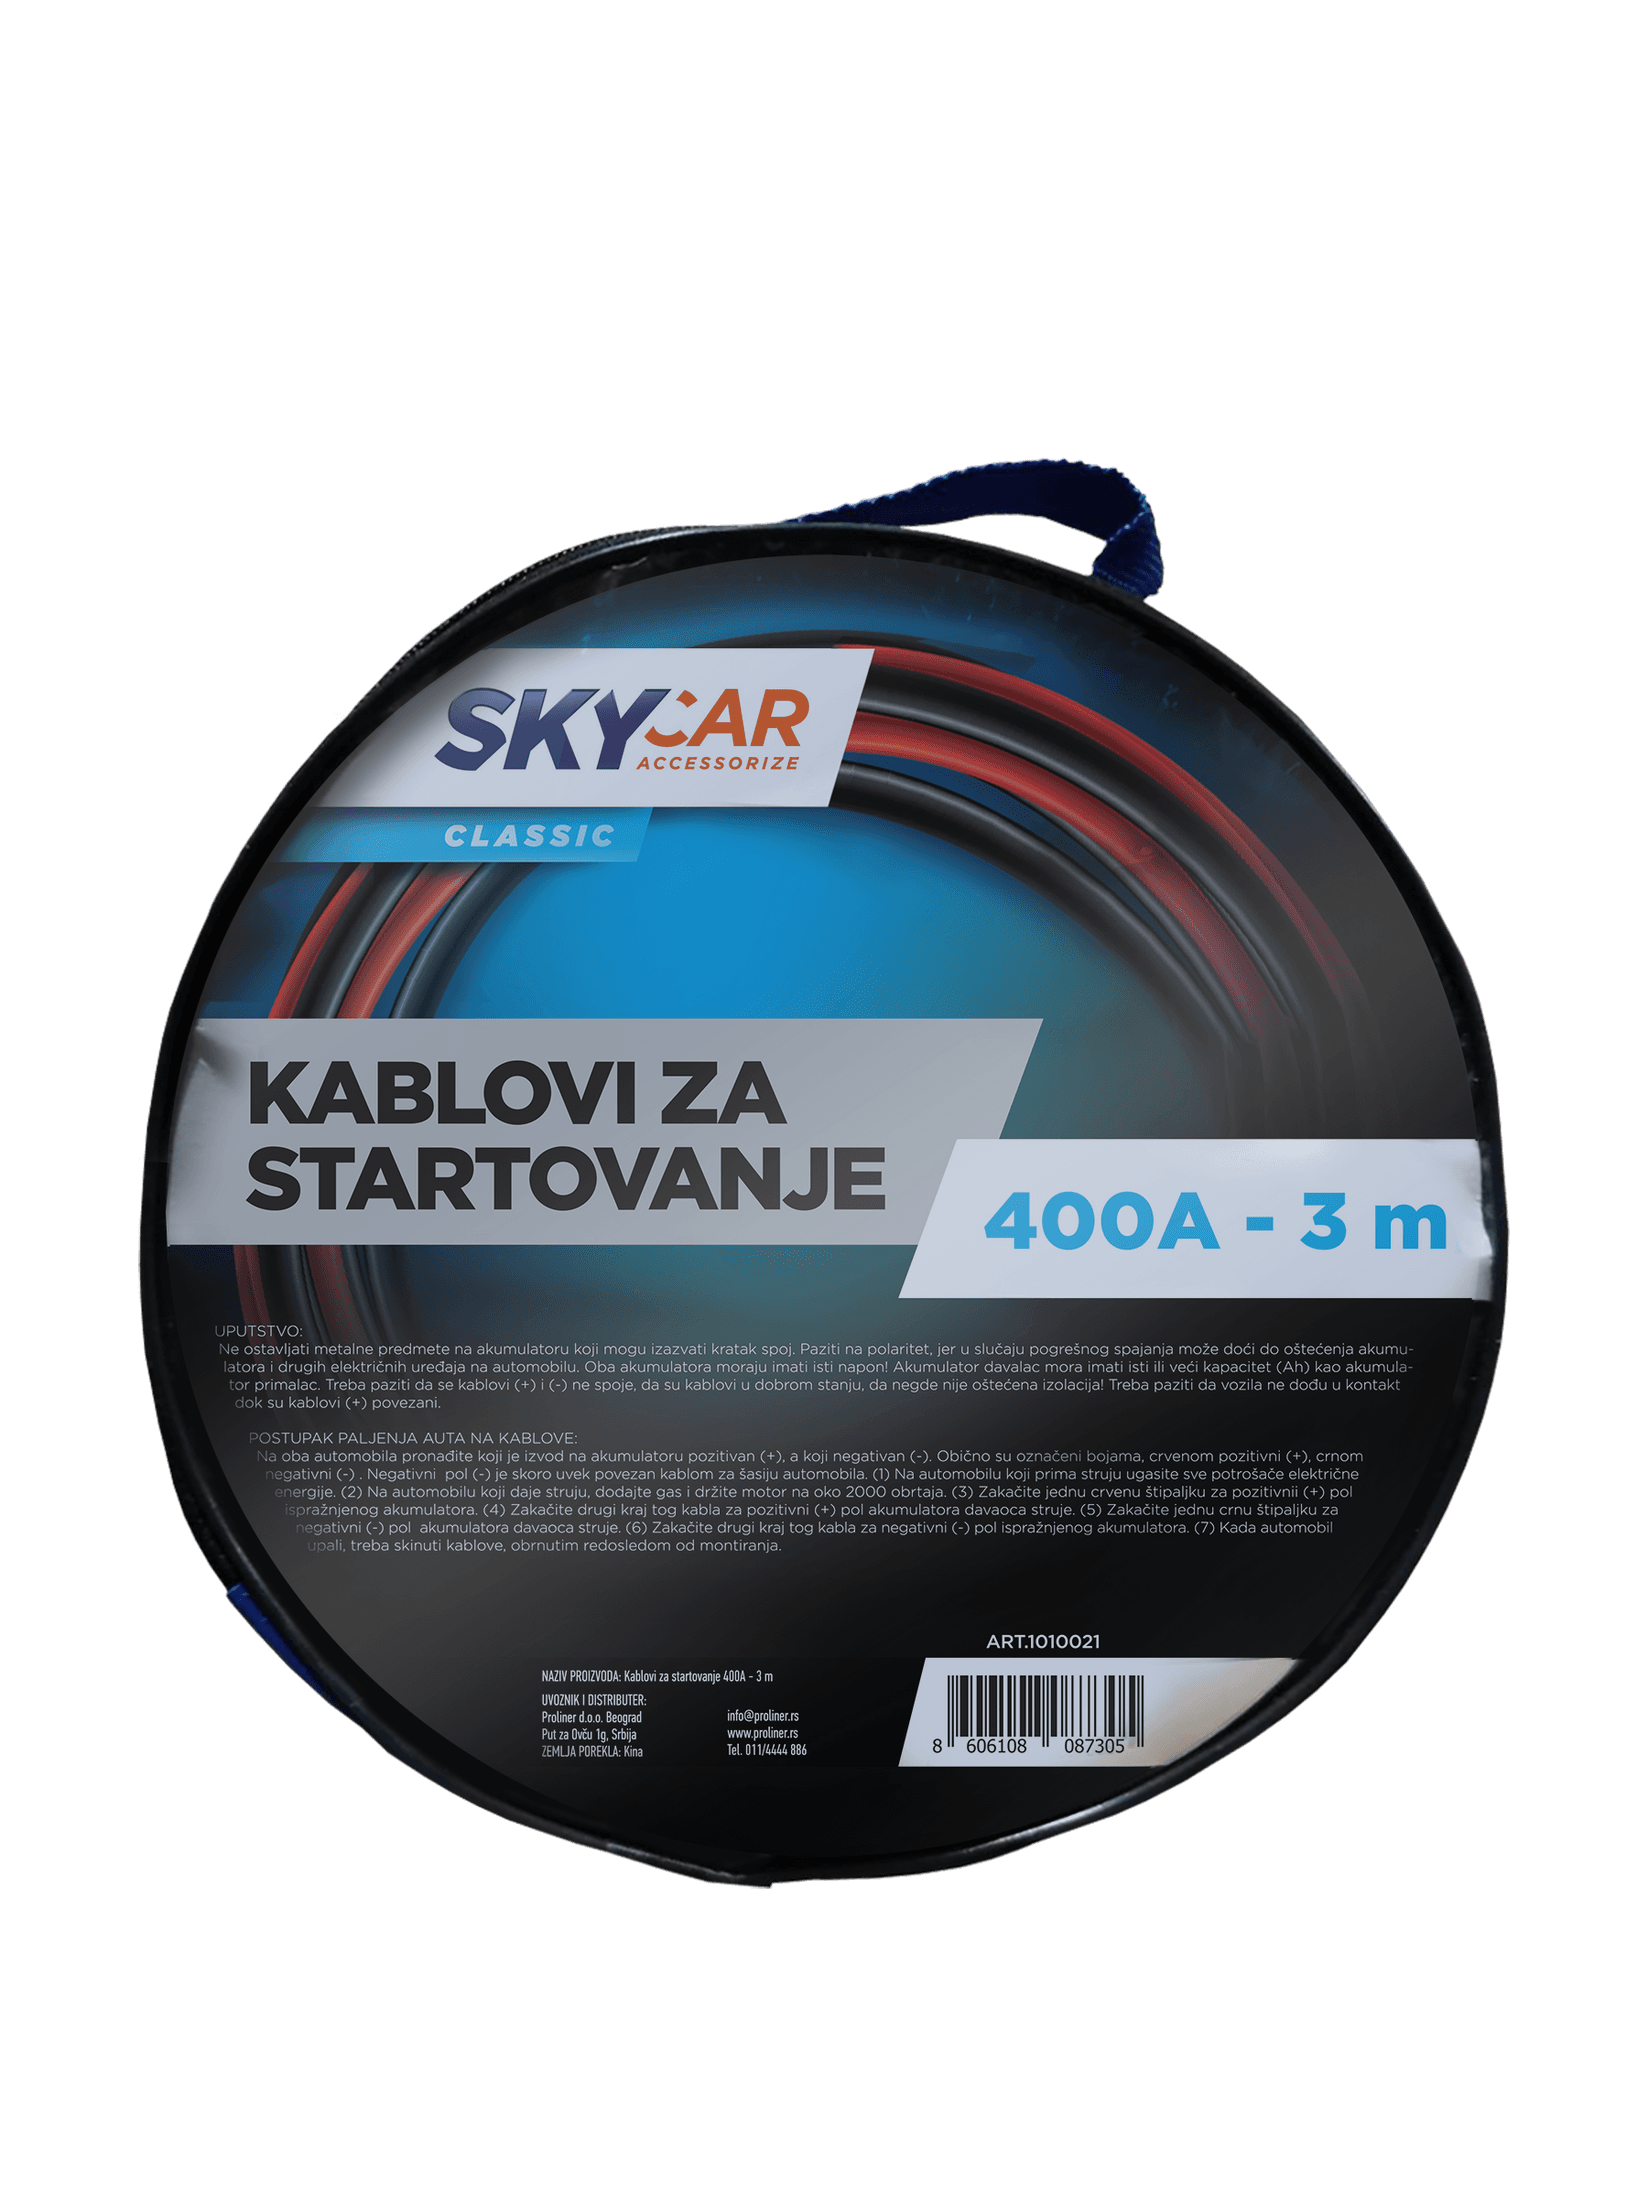 Selected image for Skycar Kablovi za startovanje 400A 3m